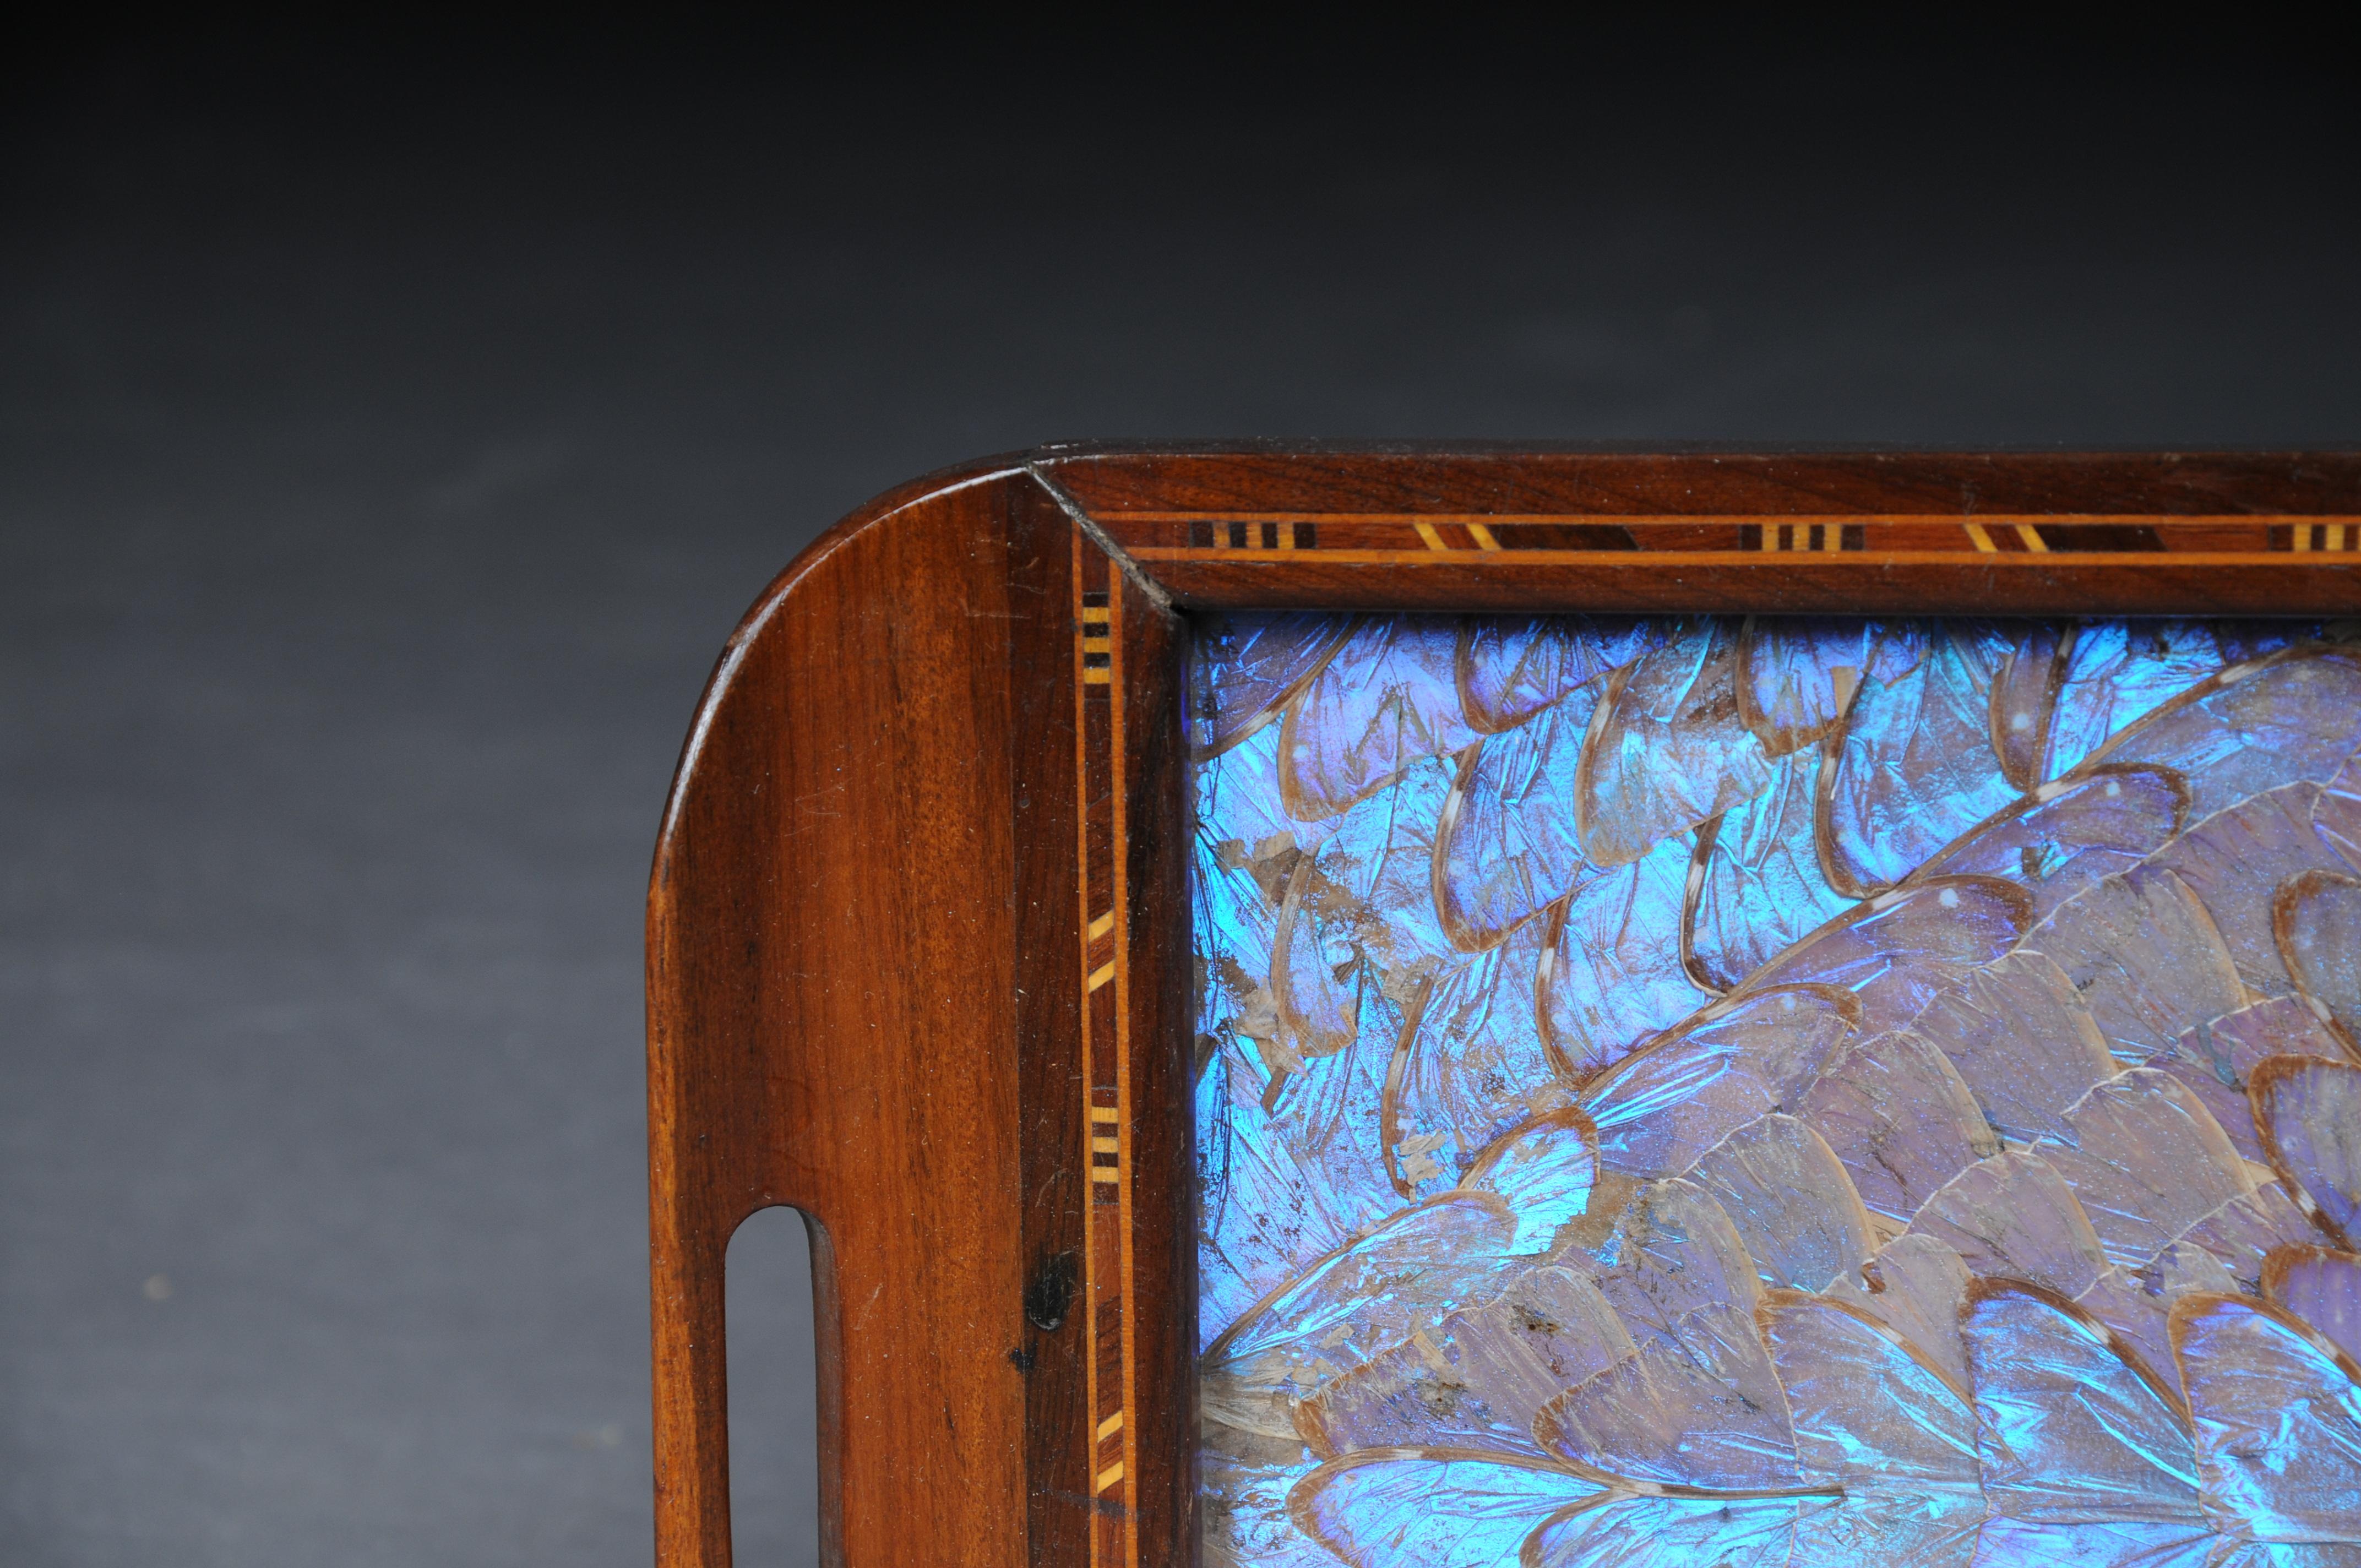 Kurioses antikes Tablett mit echten Schmetterlingsflügeln


Rahmen aus Massivholz mit Intarsieneinlagen. In der Mitte ein violett schimmerndes Muster aus echten Schmetterlingsflügeln. Äußerst ungewöhnlich und kurios. Das Tablett hat an der Rückseite